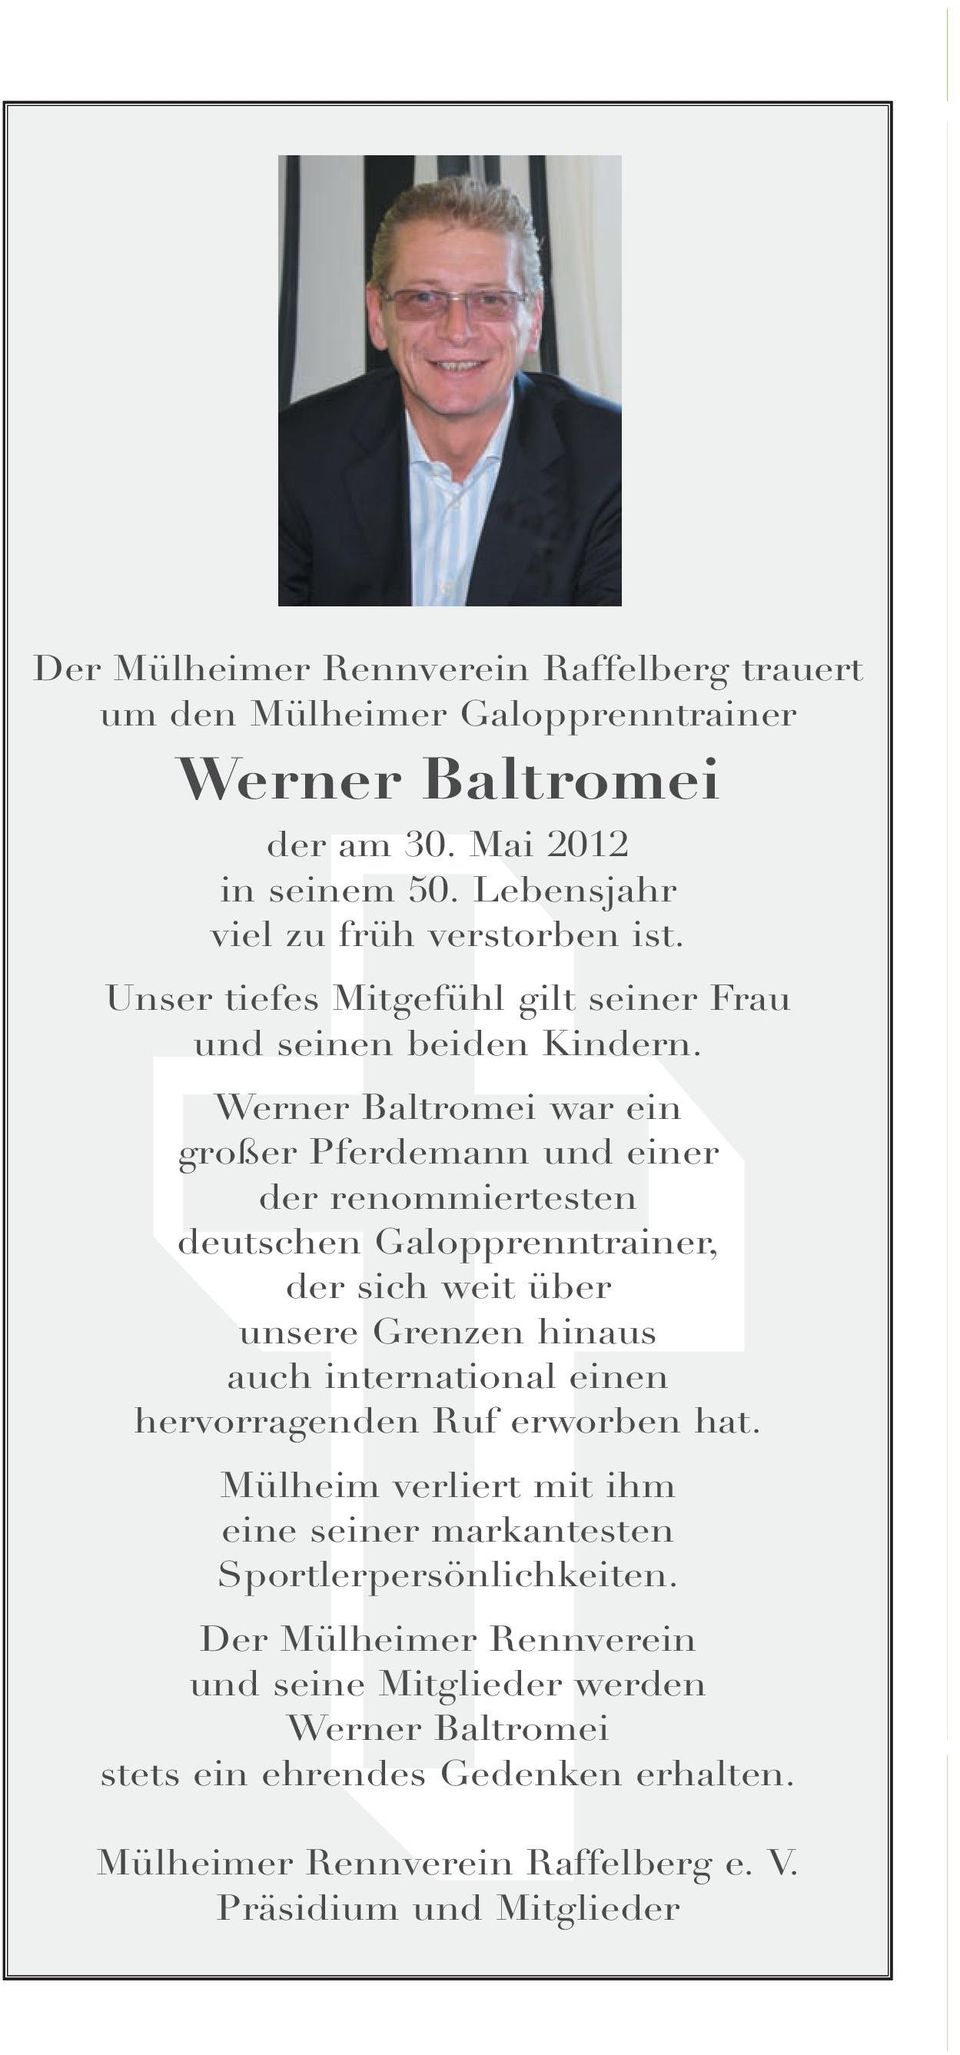 Werner Baltromei war ein großer Pferdemann und einer der renommiertesten deutschen Galopprenntrainer, der sich weit über unsere Grenzen hinaus auch international einen